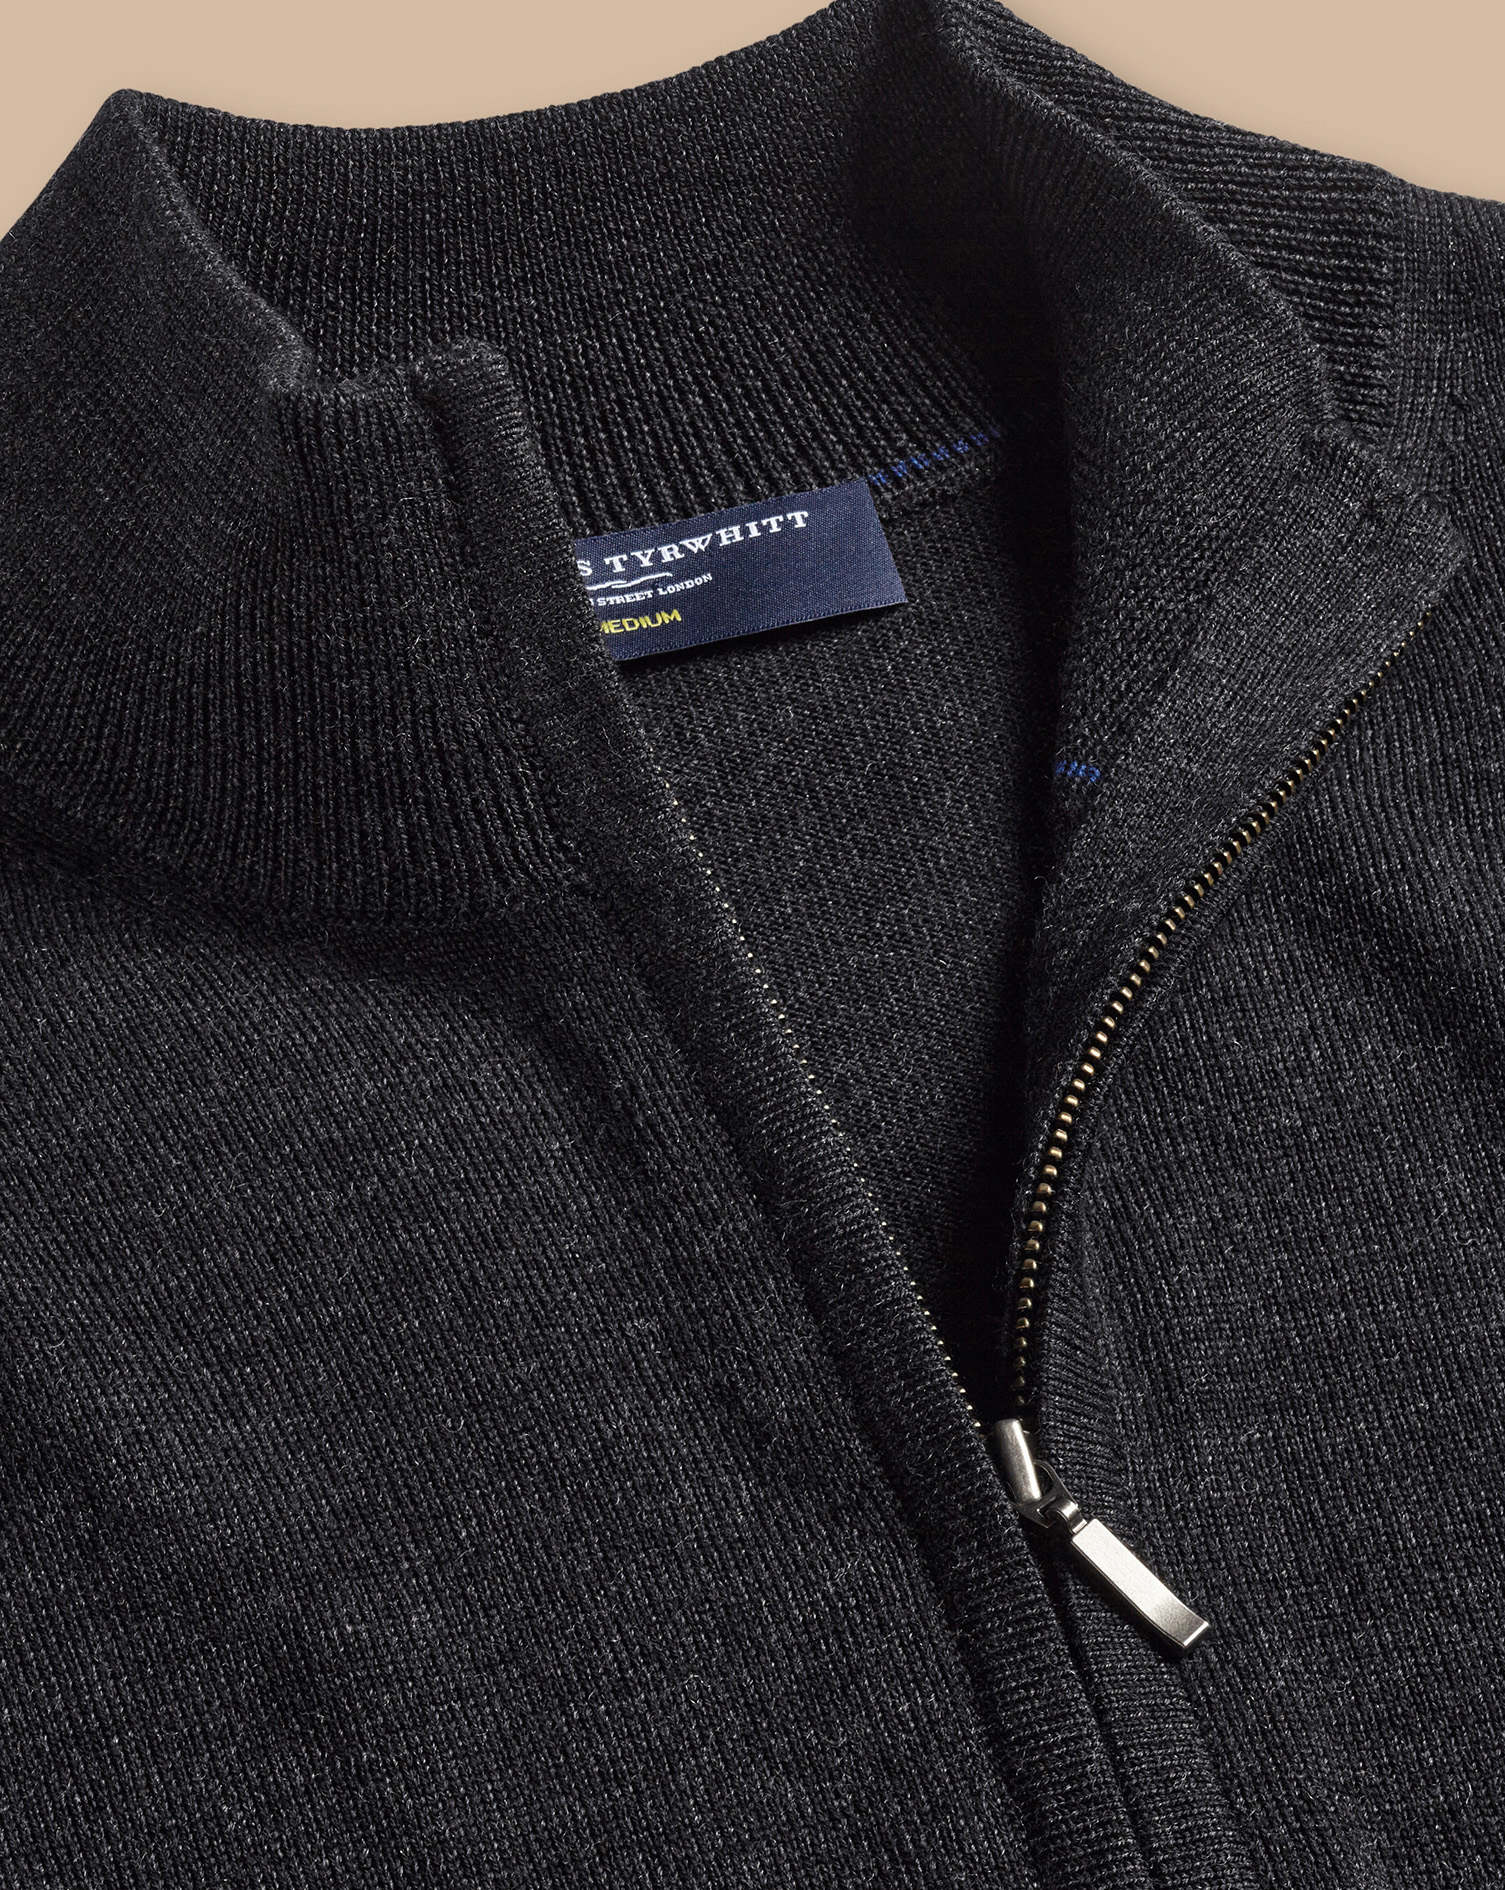 Men's Charles Tyrwhitt Pure Merino Full Zip-Through Cardigan - Charcoal Grey Size Medium Wool
